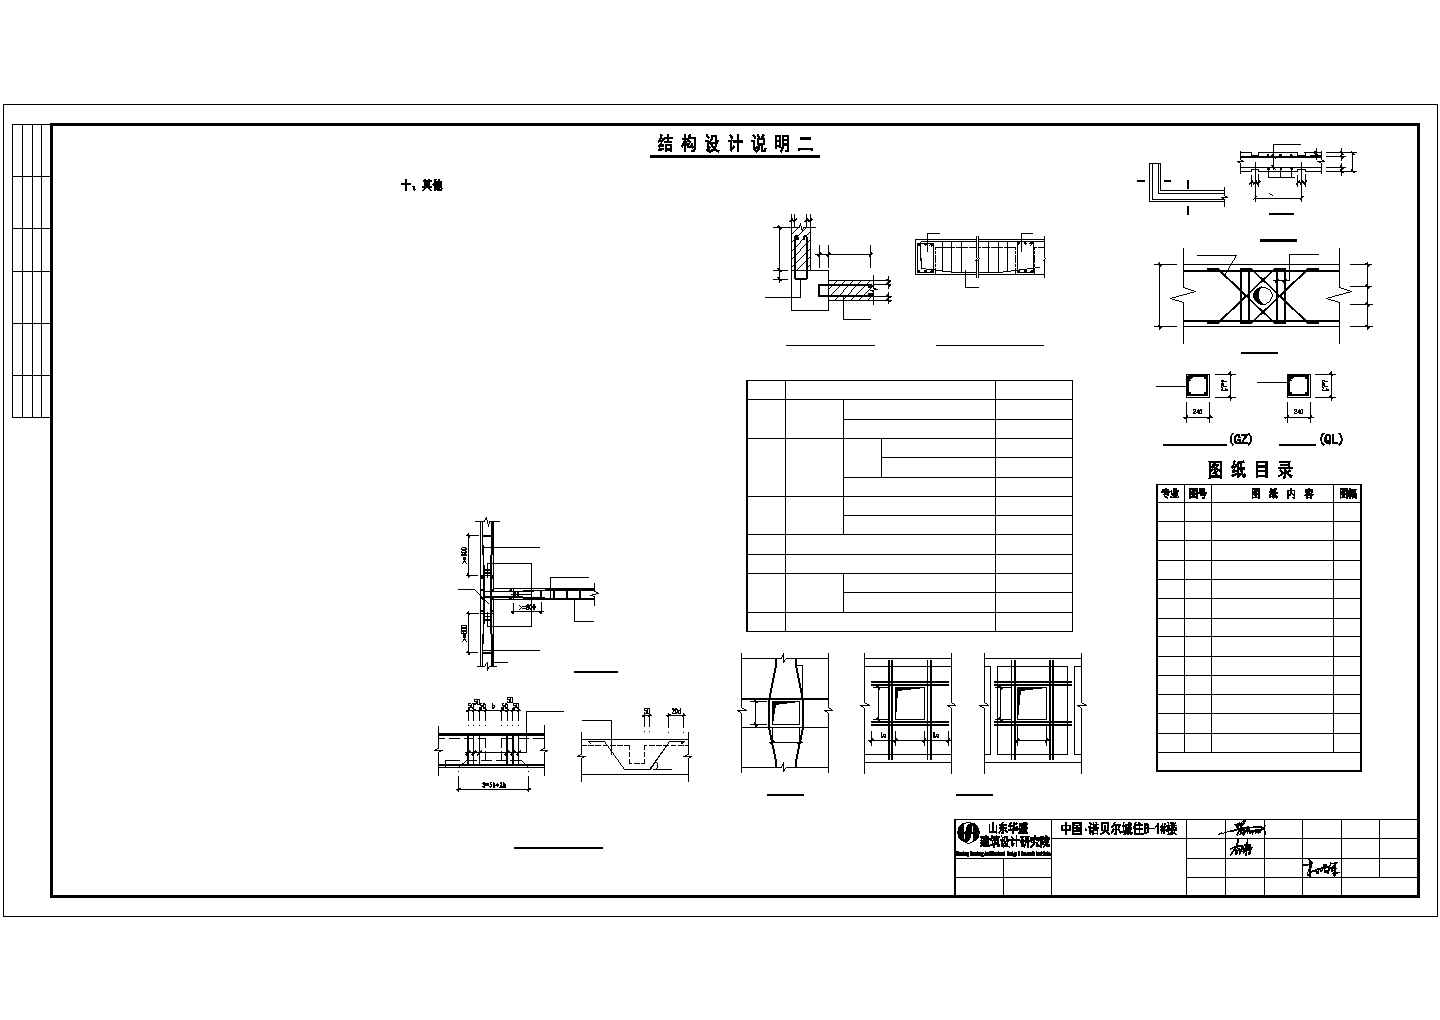 西班牙风格节能型1051.08㎡2层联排别墅建筑施工套图(带节能设计及总图)